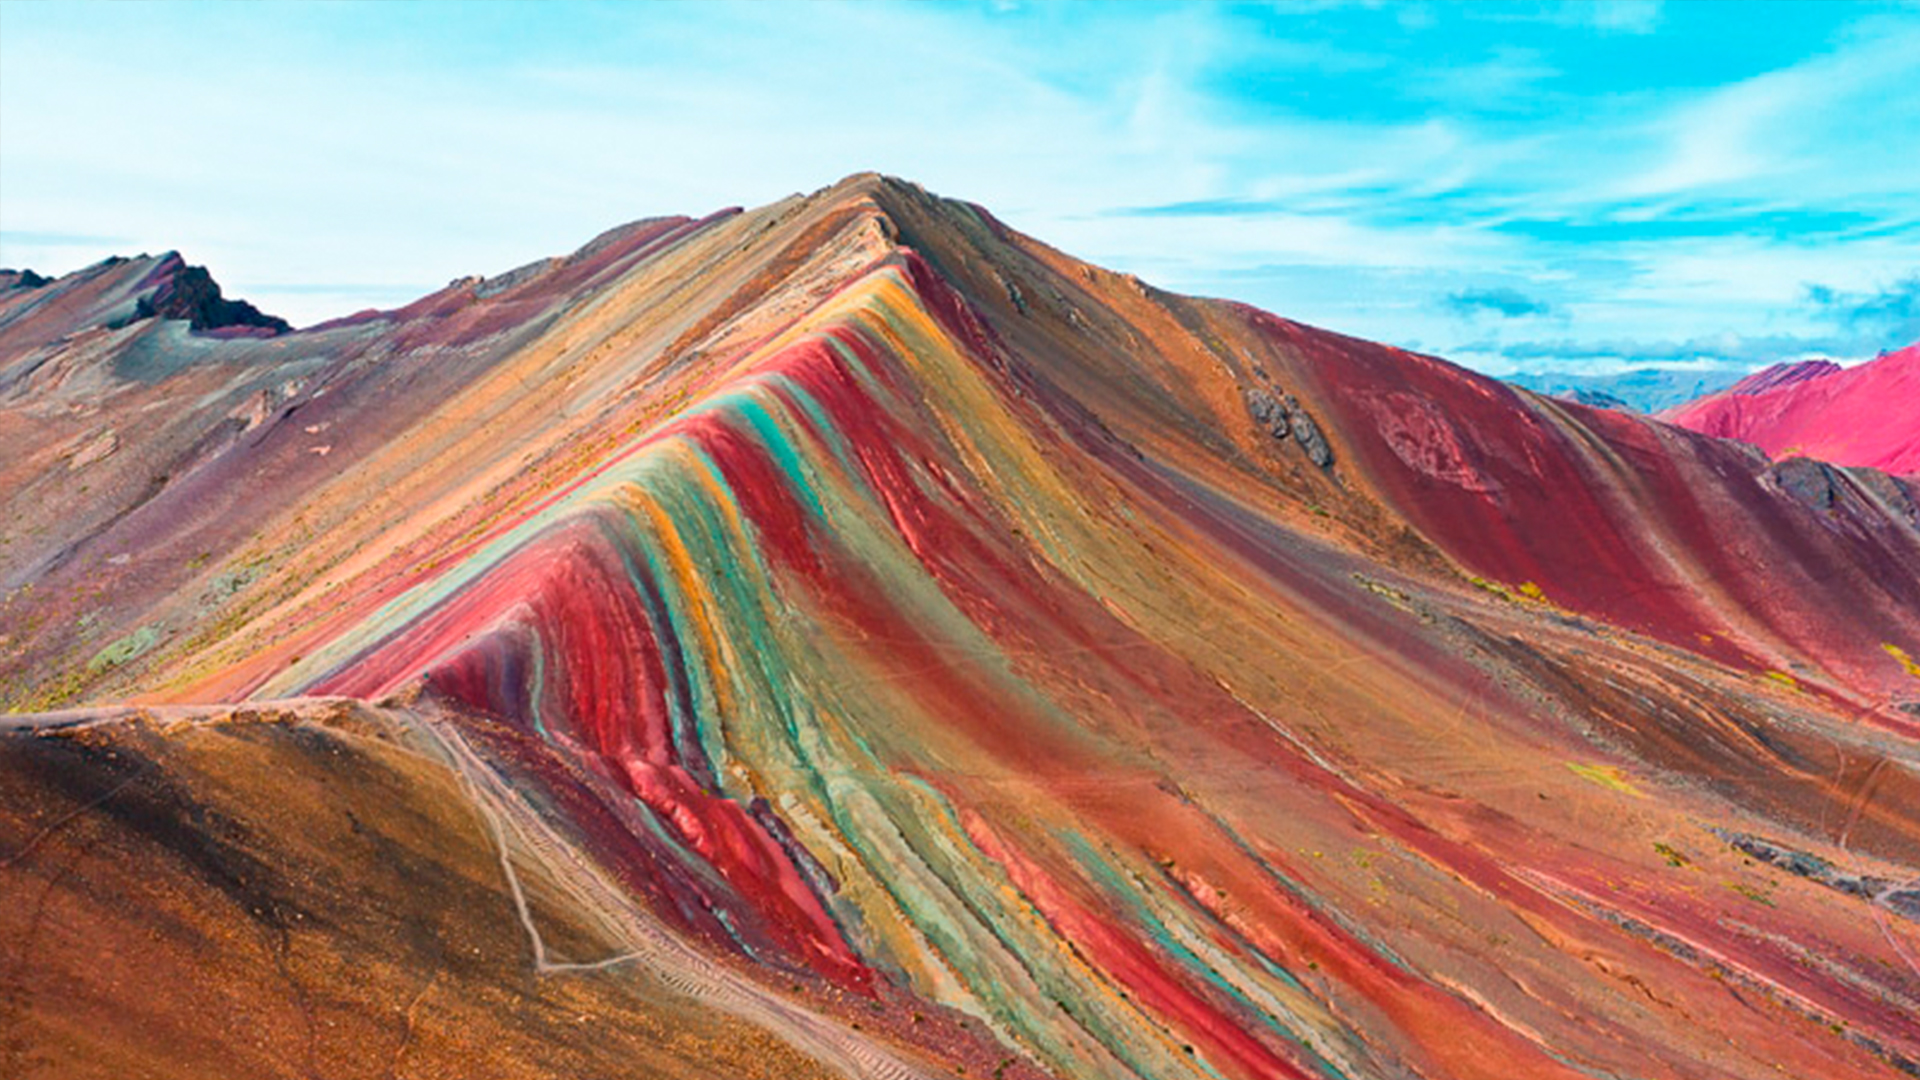 ��Rainbow Mountain in Peru 🇵🇪